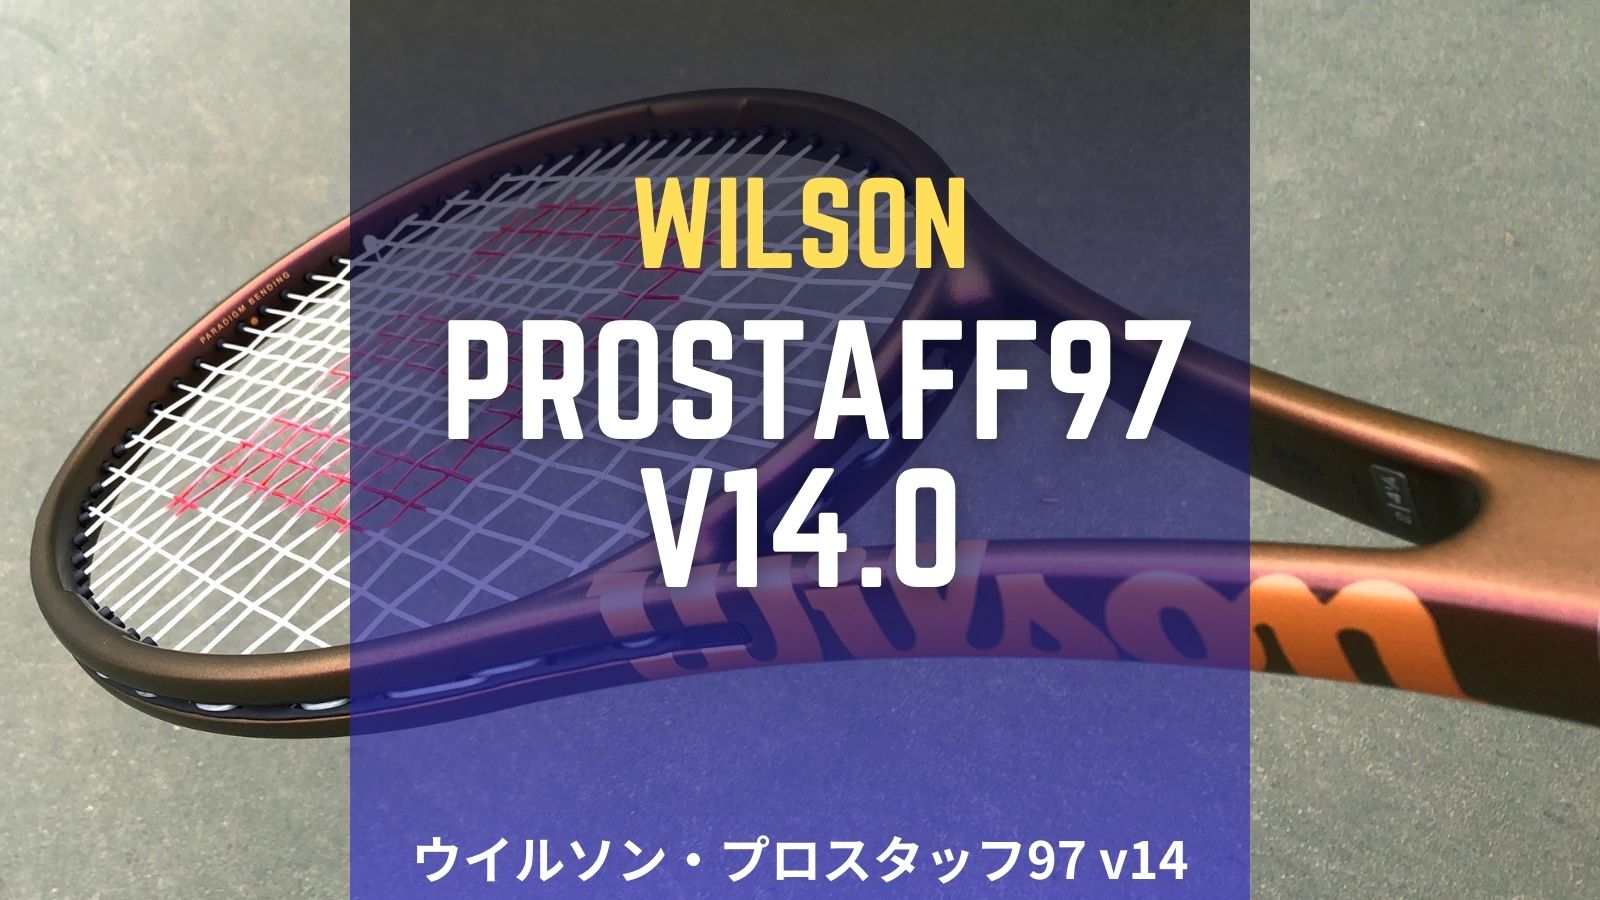 ウイルソン・プロスタッフ97 v14.0をインプレ/レビュー！Wilson